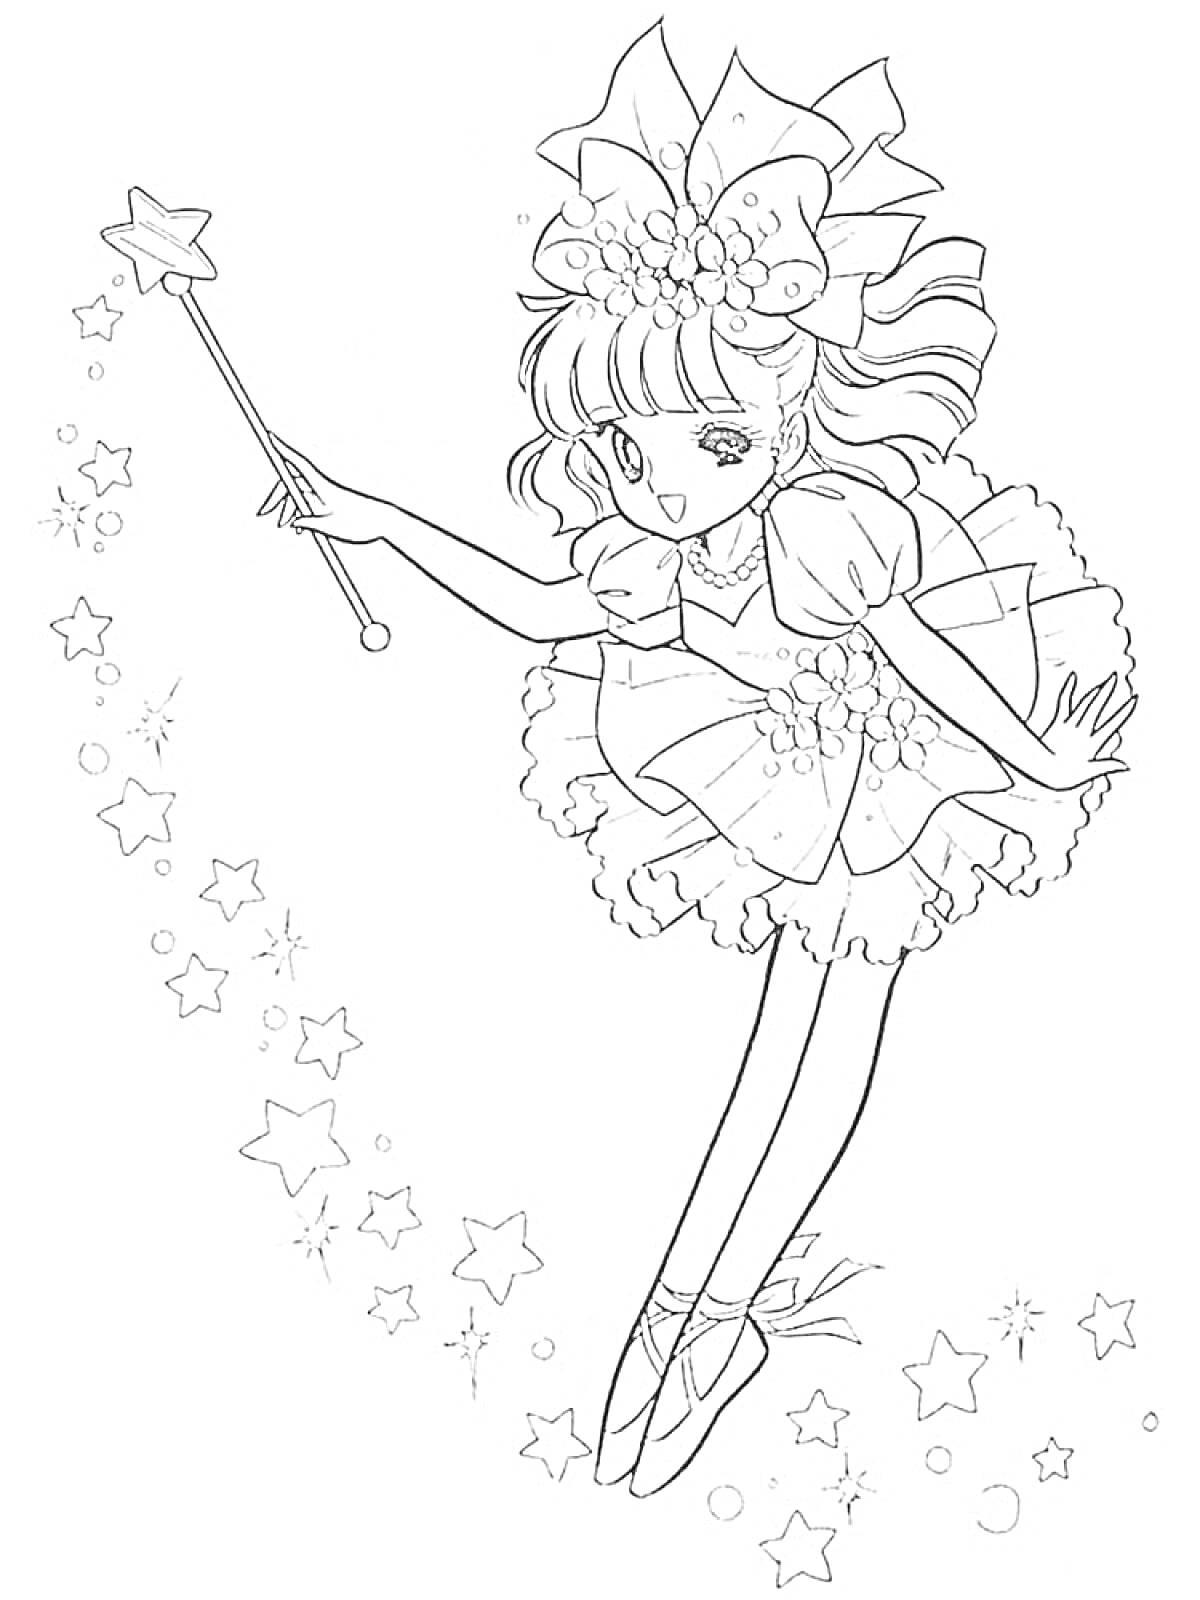 Раскраска Фея с волшебной палочкой в пышном платье и балетках, разбрасывающая звезды